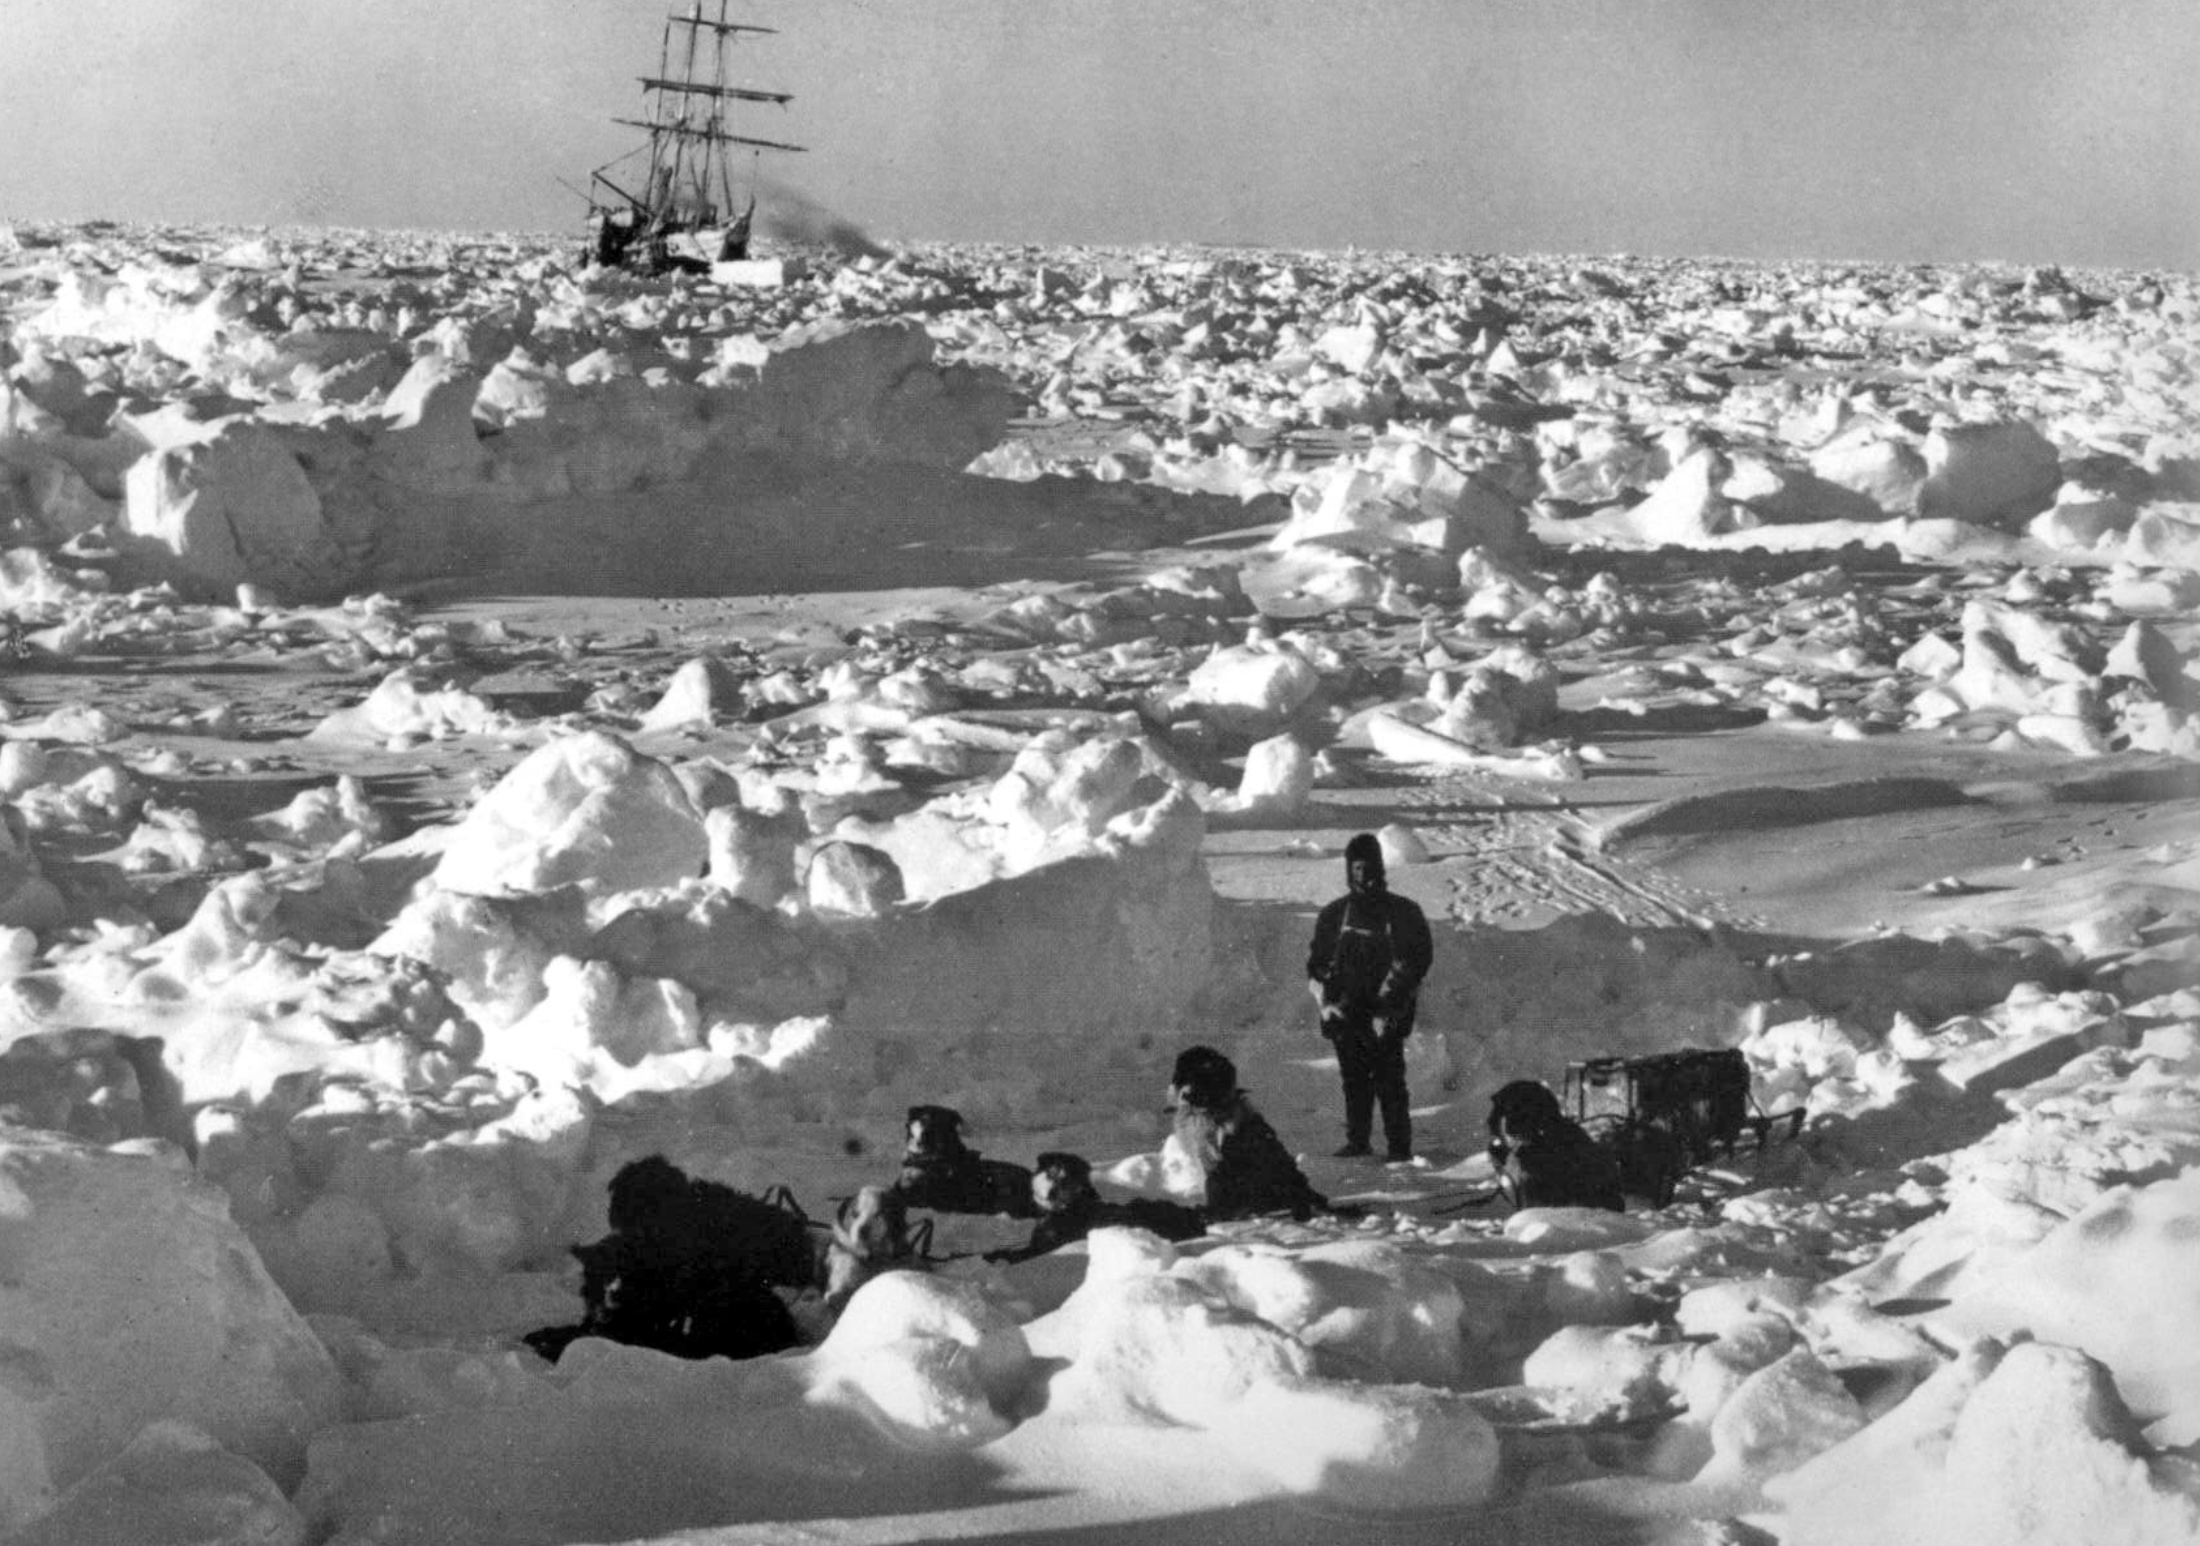 Шеклтон Антарктида. Ernest Shackleton 1914 Expedition. Австралийская антарктическая Экспедиция. Мазурук 1957 Антарктида. В середине 20 века антарктида для многих